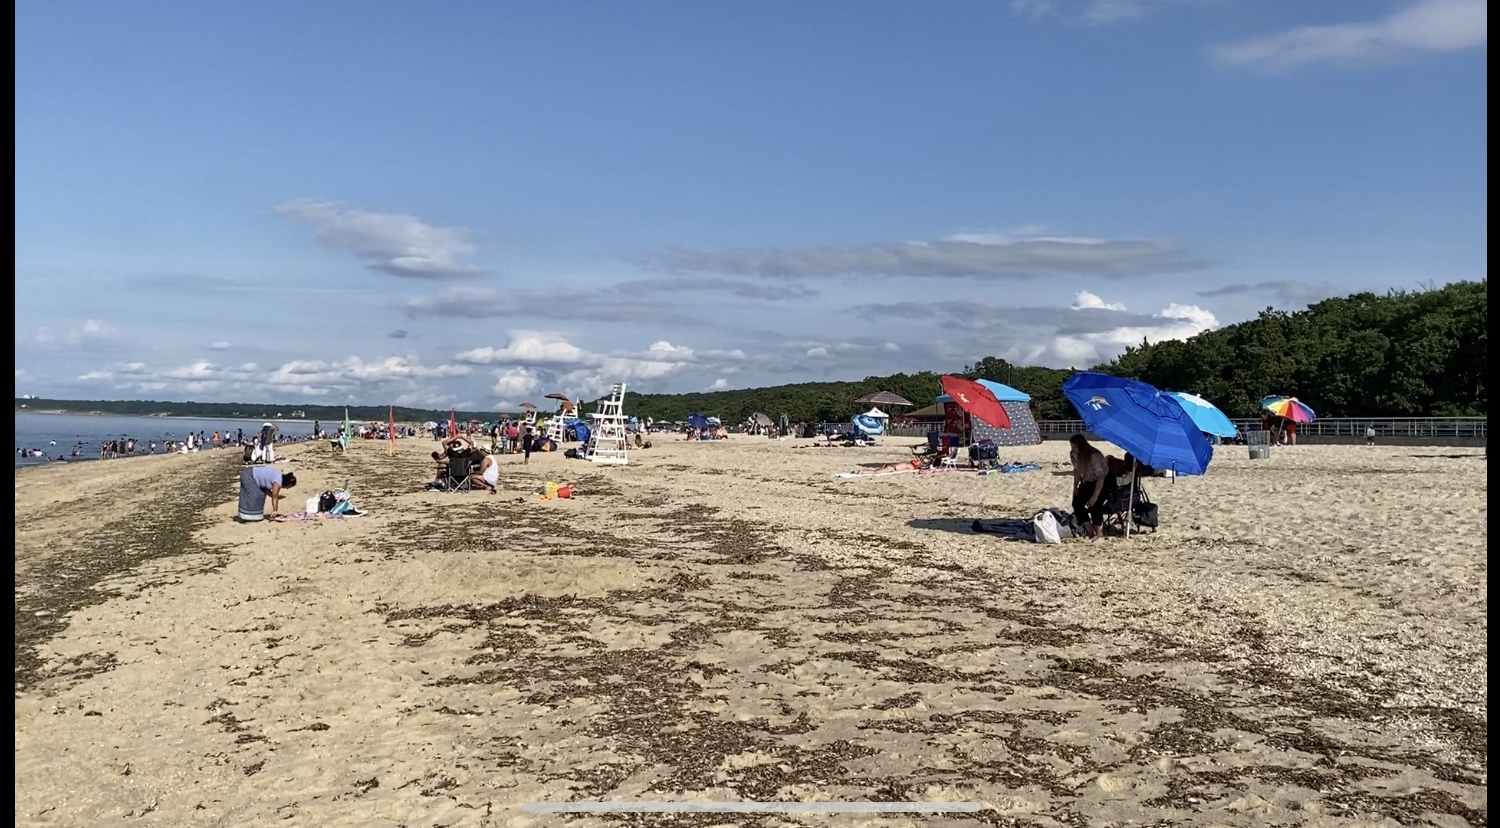 Callahans Beach'in fotoğrafı geniş plaj ile birlikte